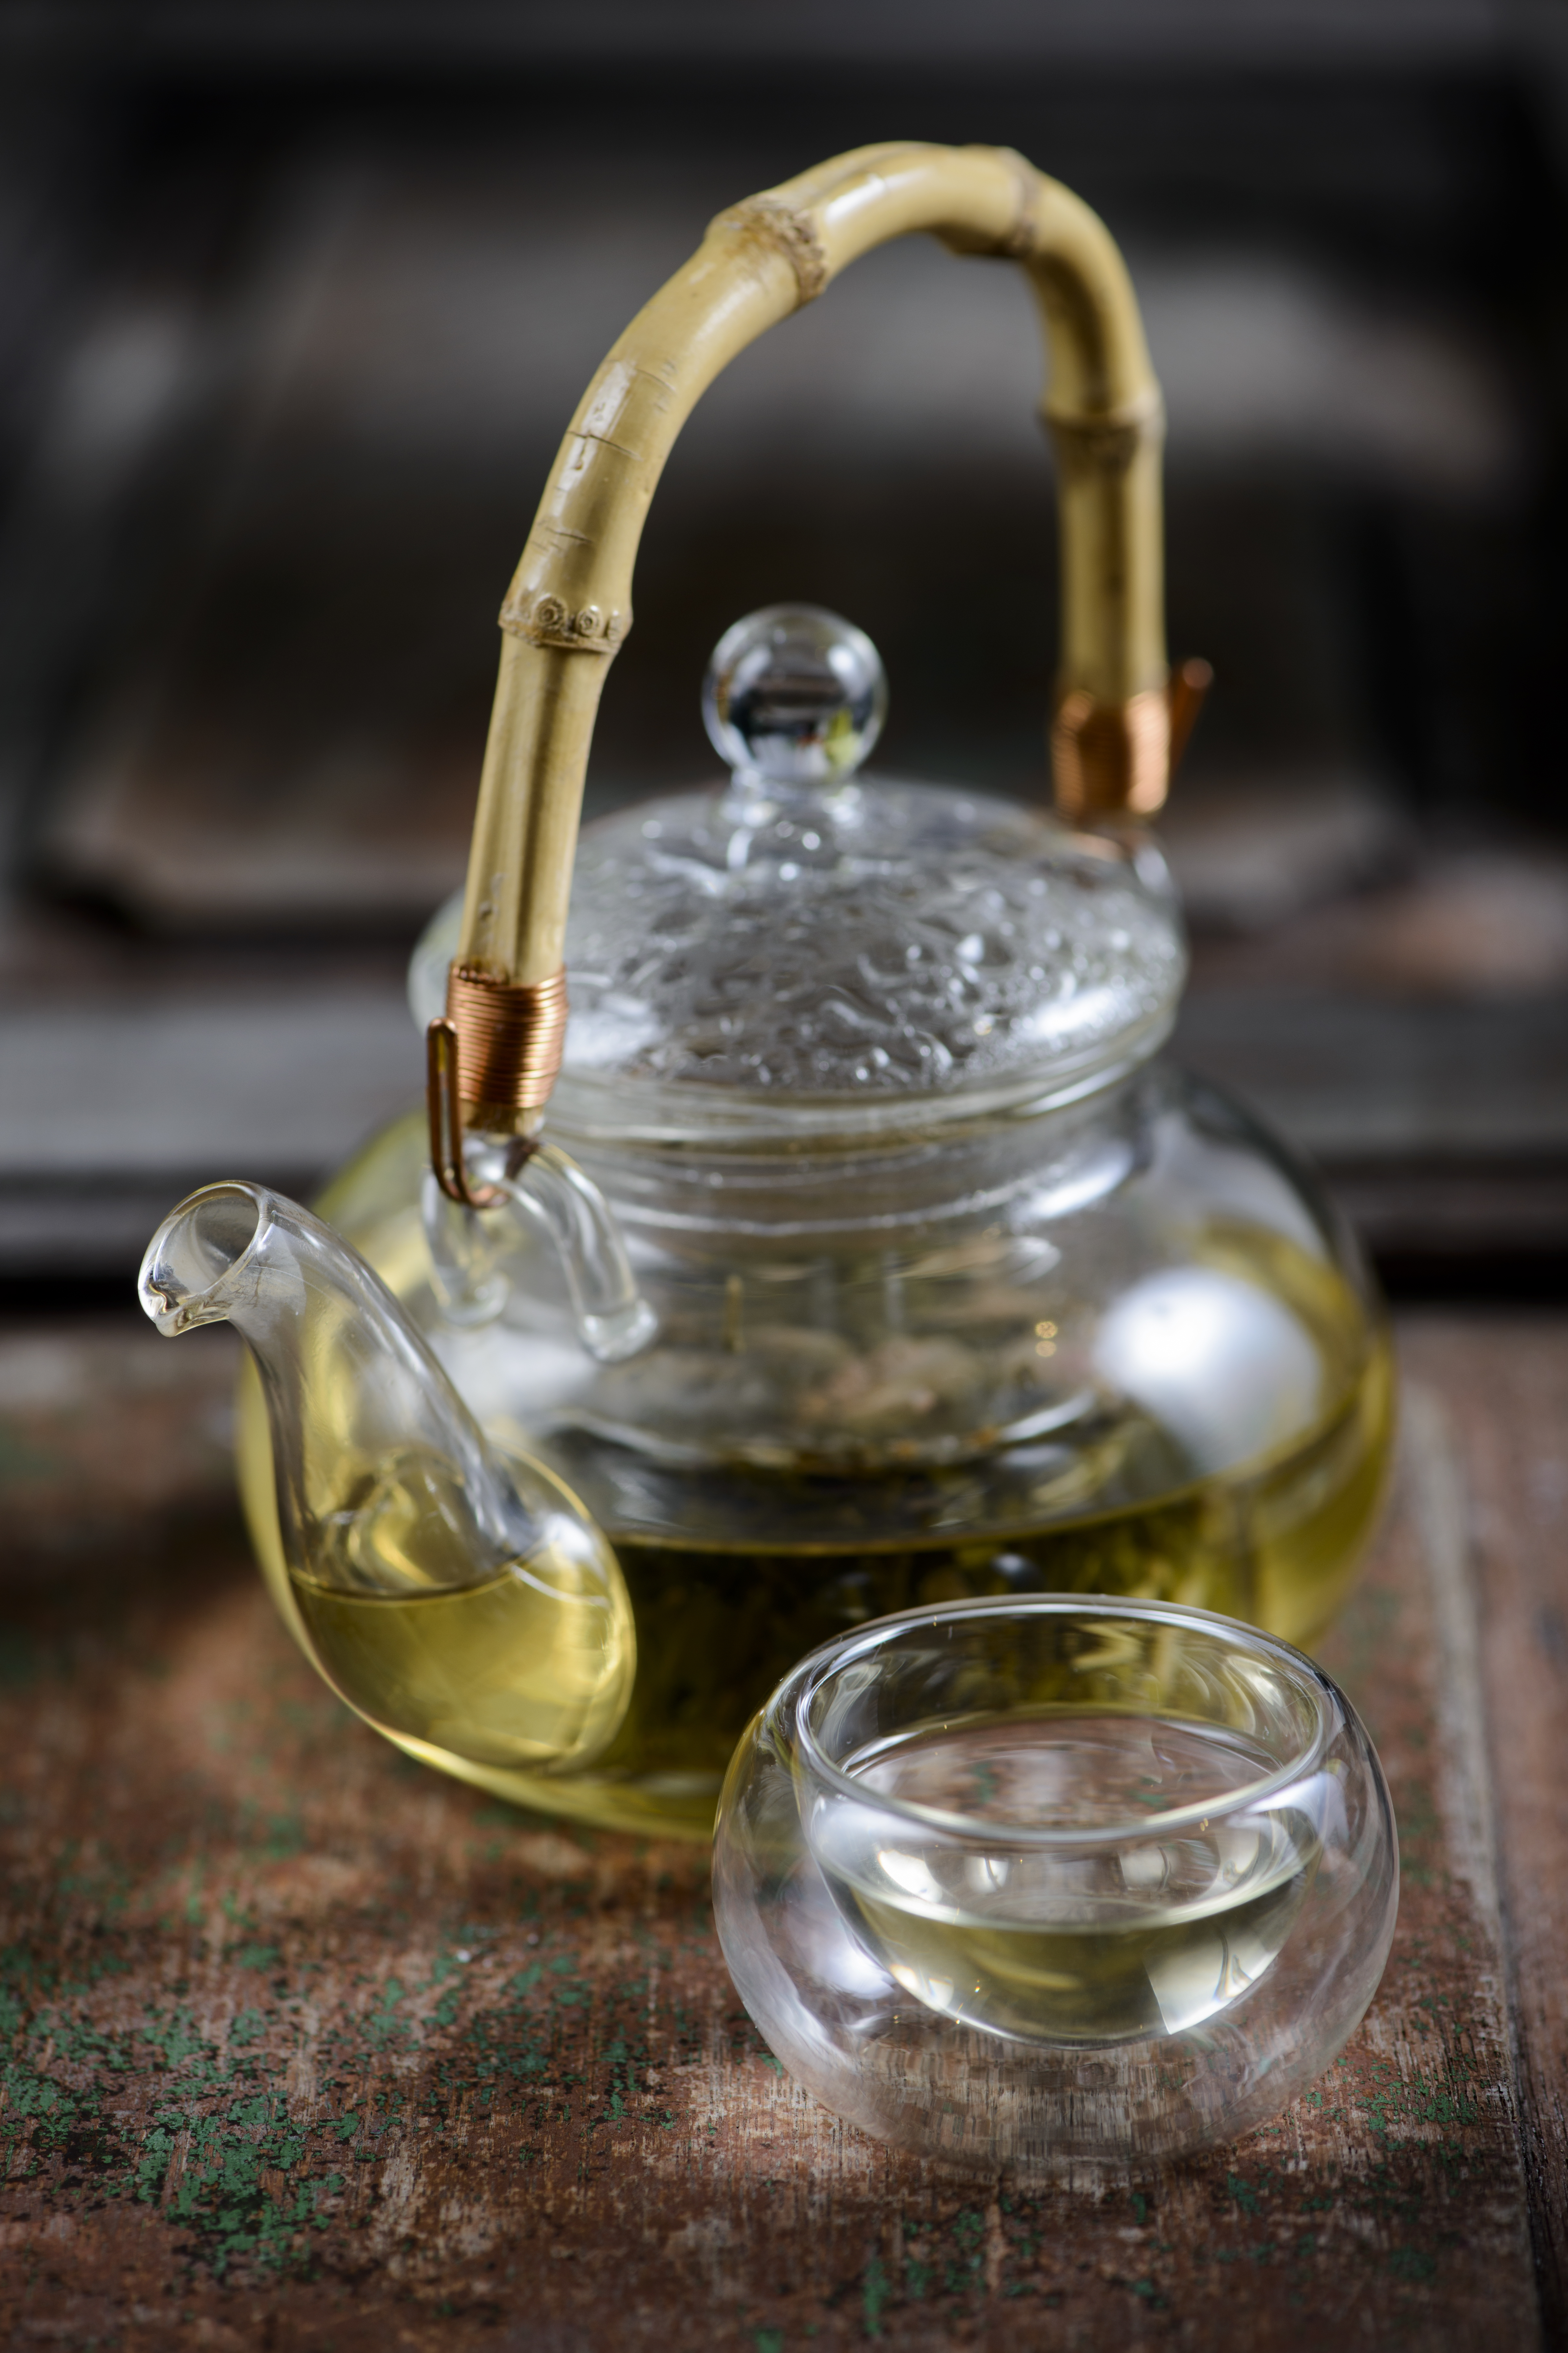 El té de orégano sirve para enfermedades respiratorias como el asma o la tos (Foto: Getty Images)